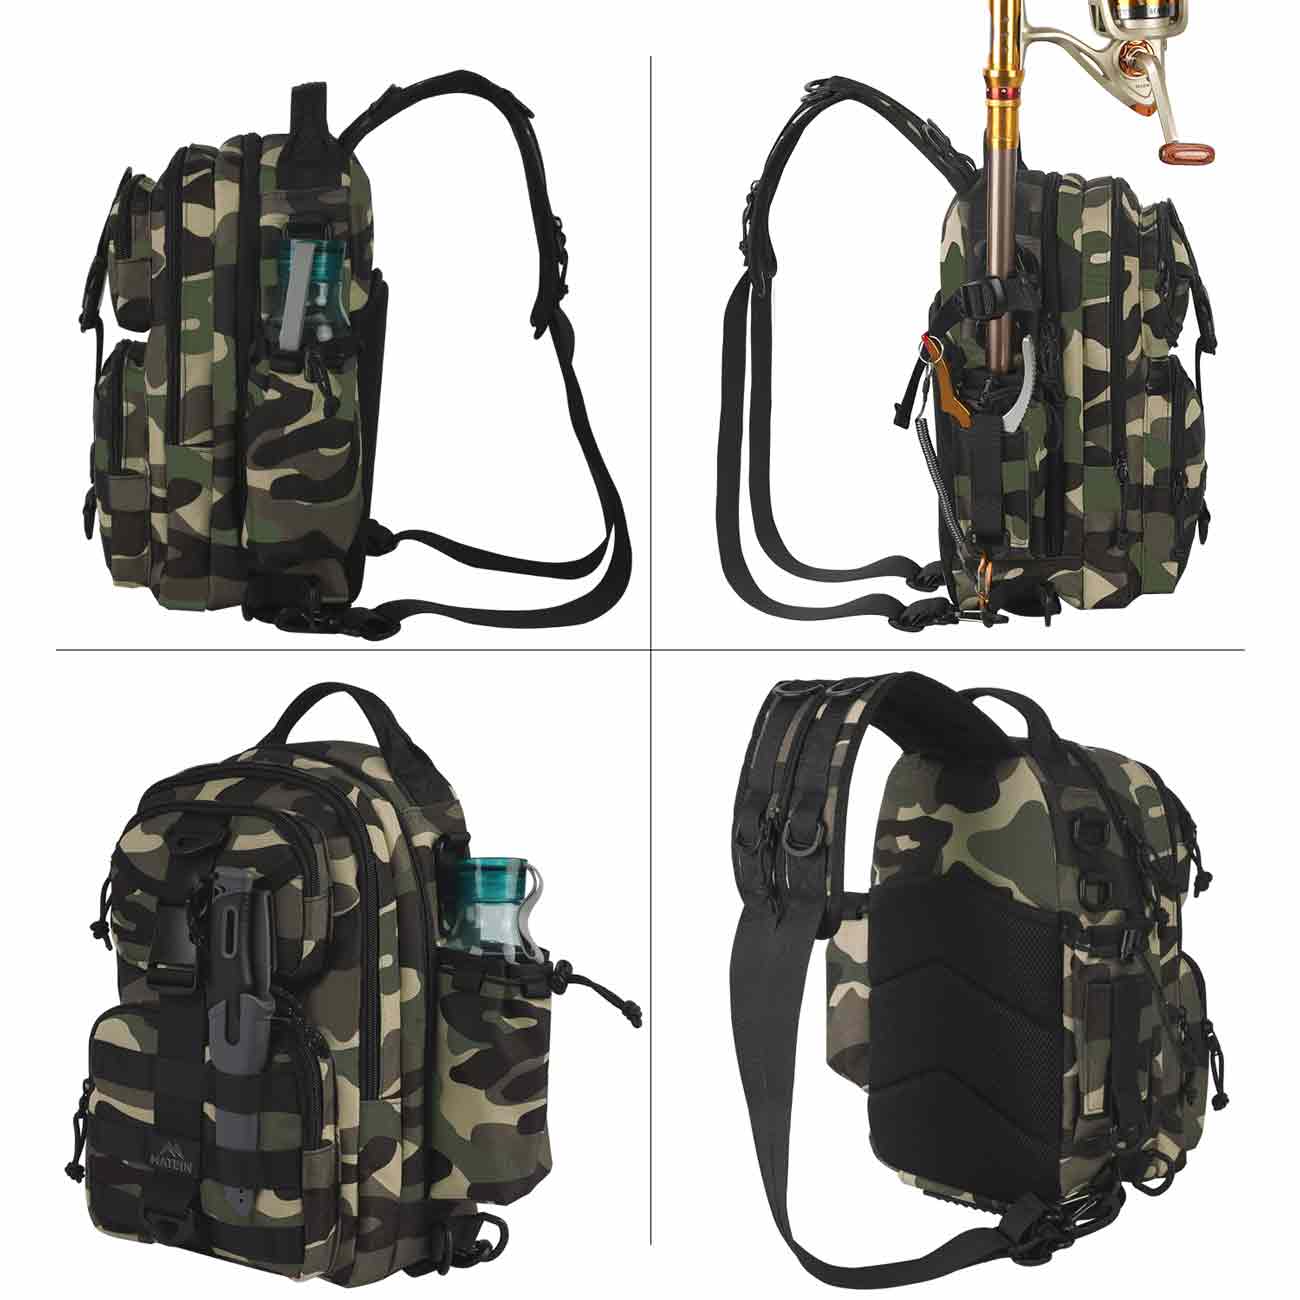  MATEIN Fishing Backpack Tackle Bag, Small Convertible